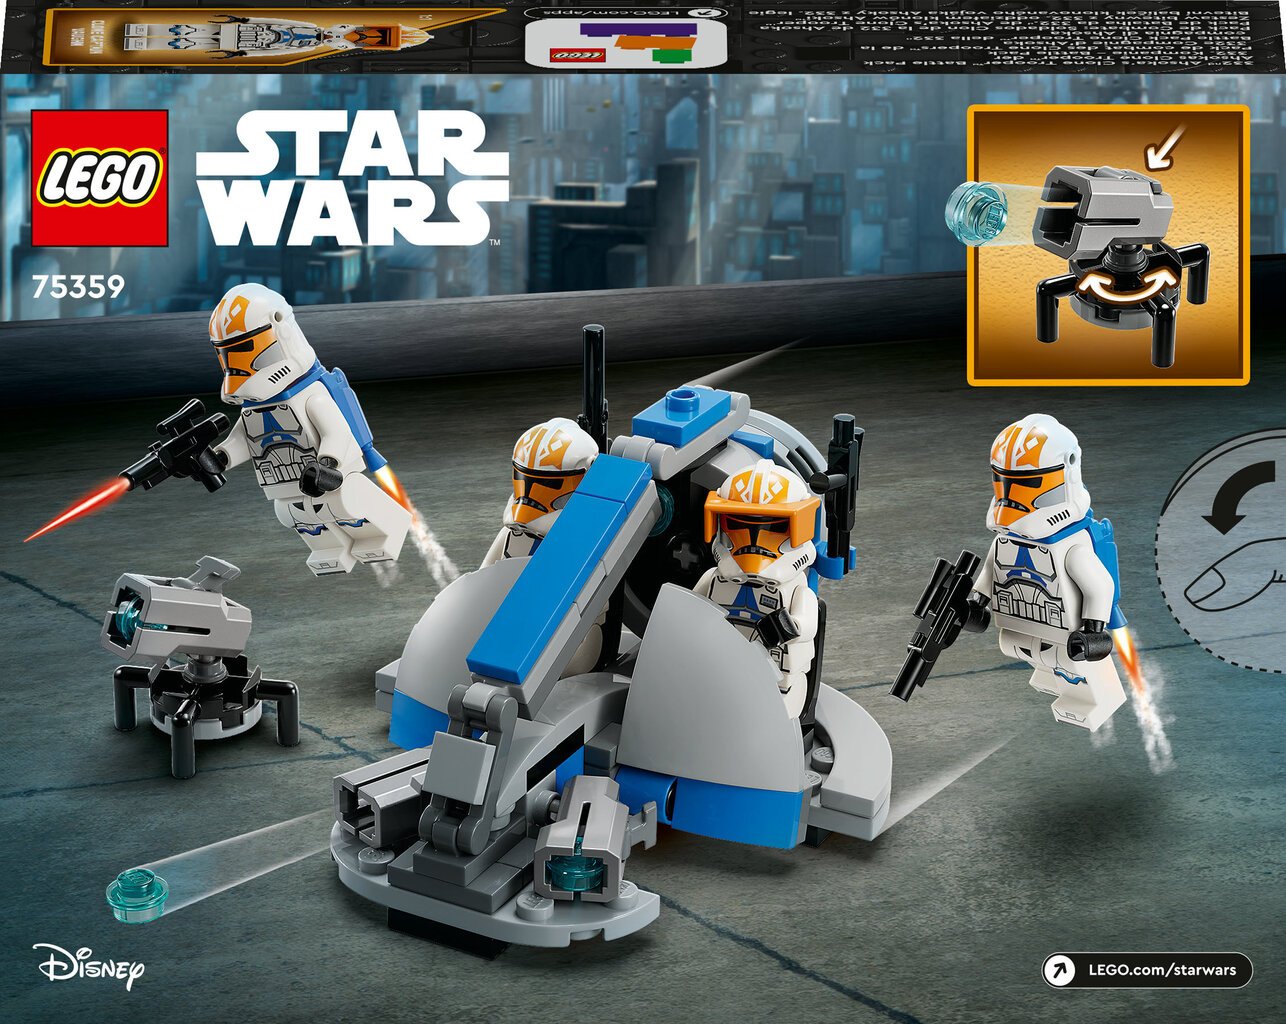 75359 LEGO® Star Wars Asokos 332 kuopos klonų kario mūšio paketas kaina |  pigu.lt